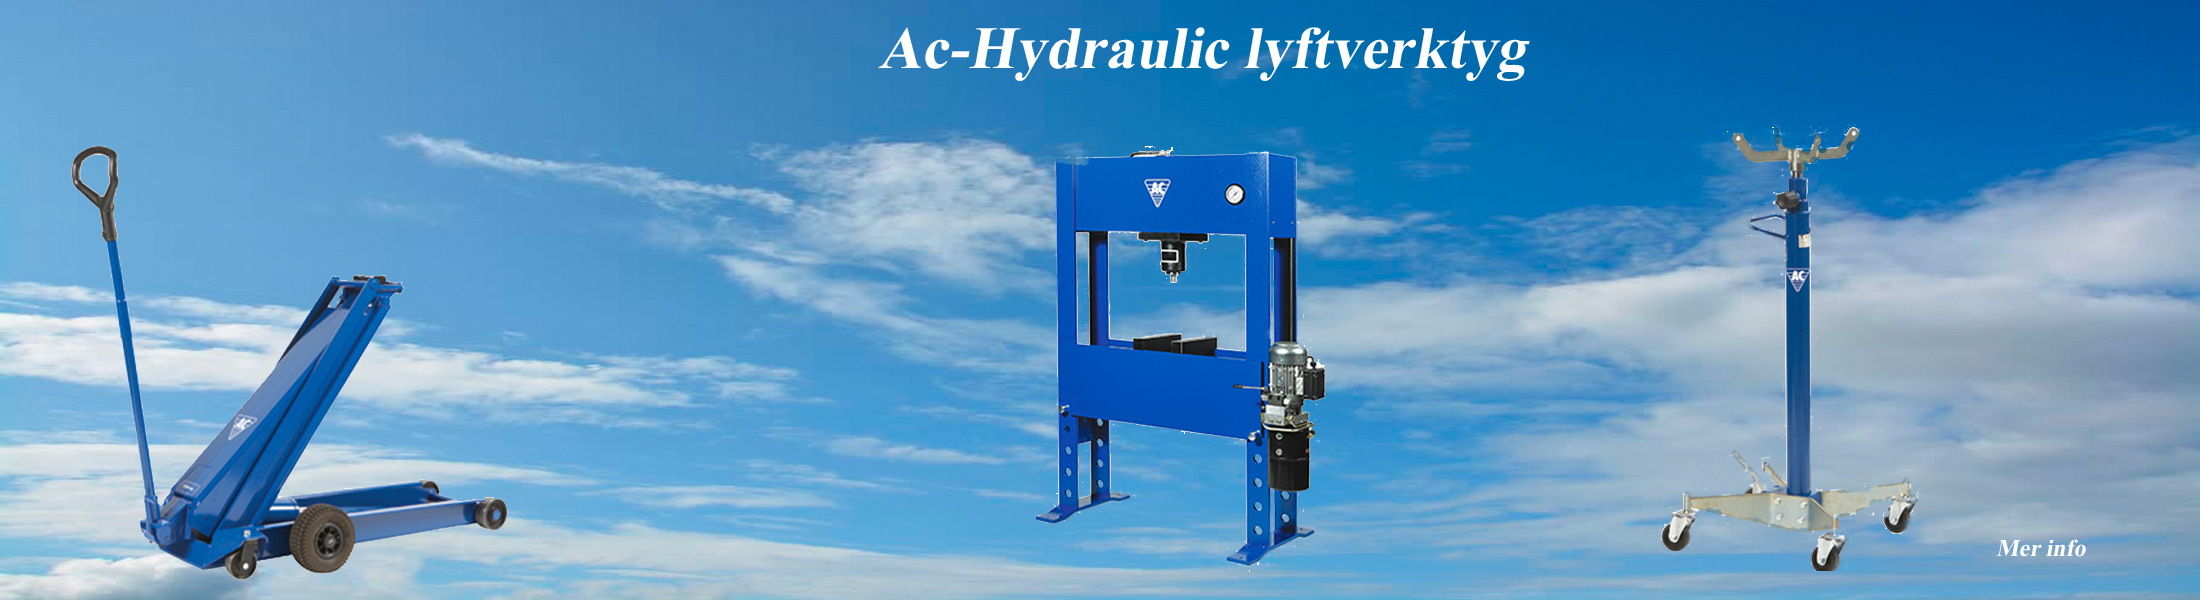 AC-hydralic lyftverktyg